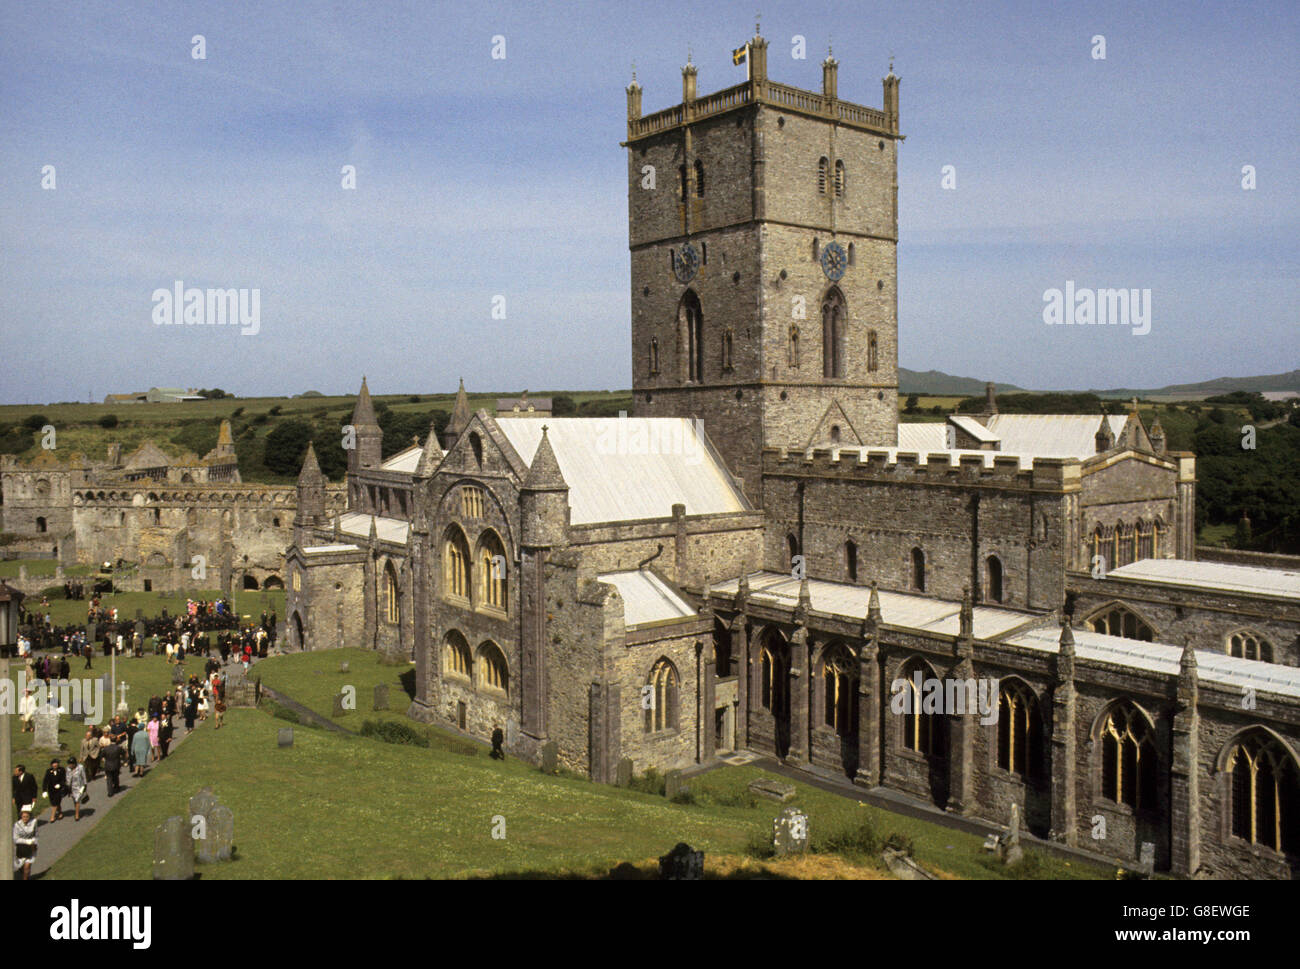 St. David's Cathedral in Wales, beschäftigt mit Menschen, wie der Prinz von Wales besucht auf seiner Tour. Stockfoto